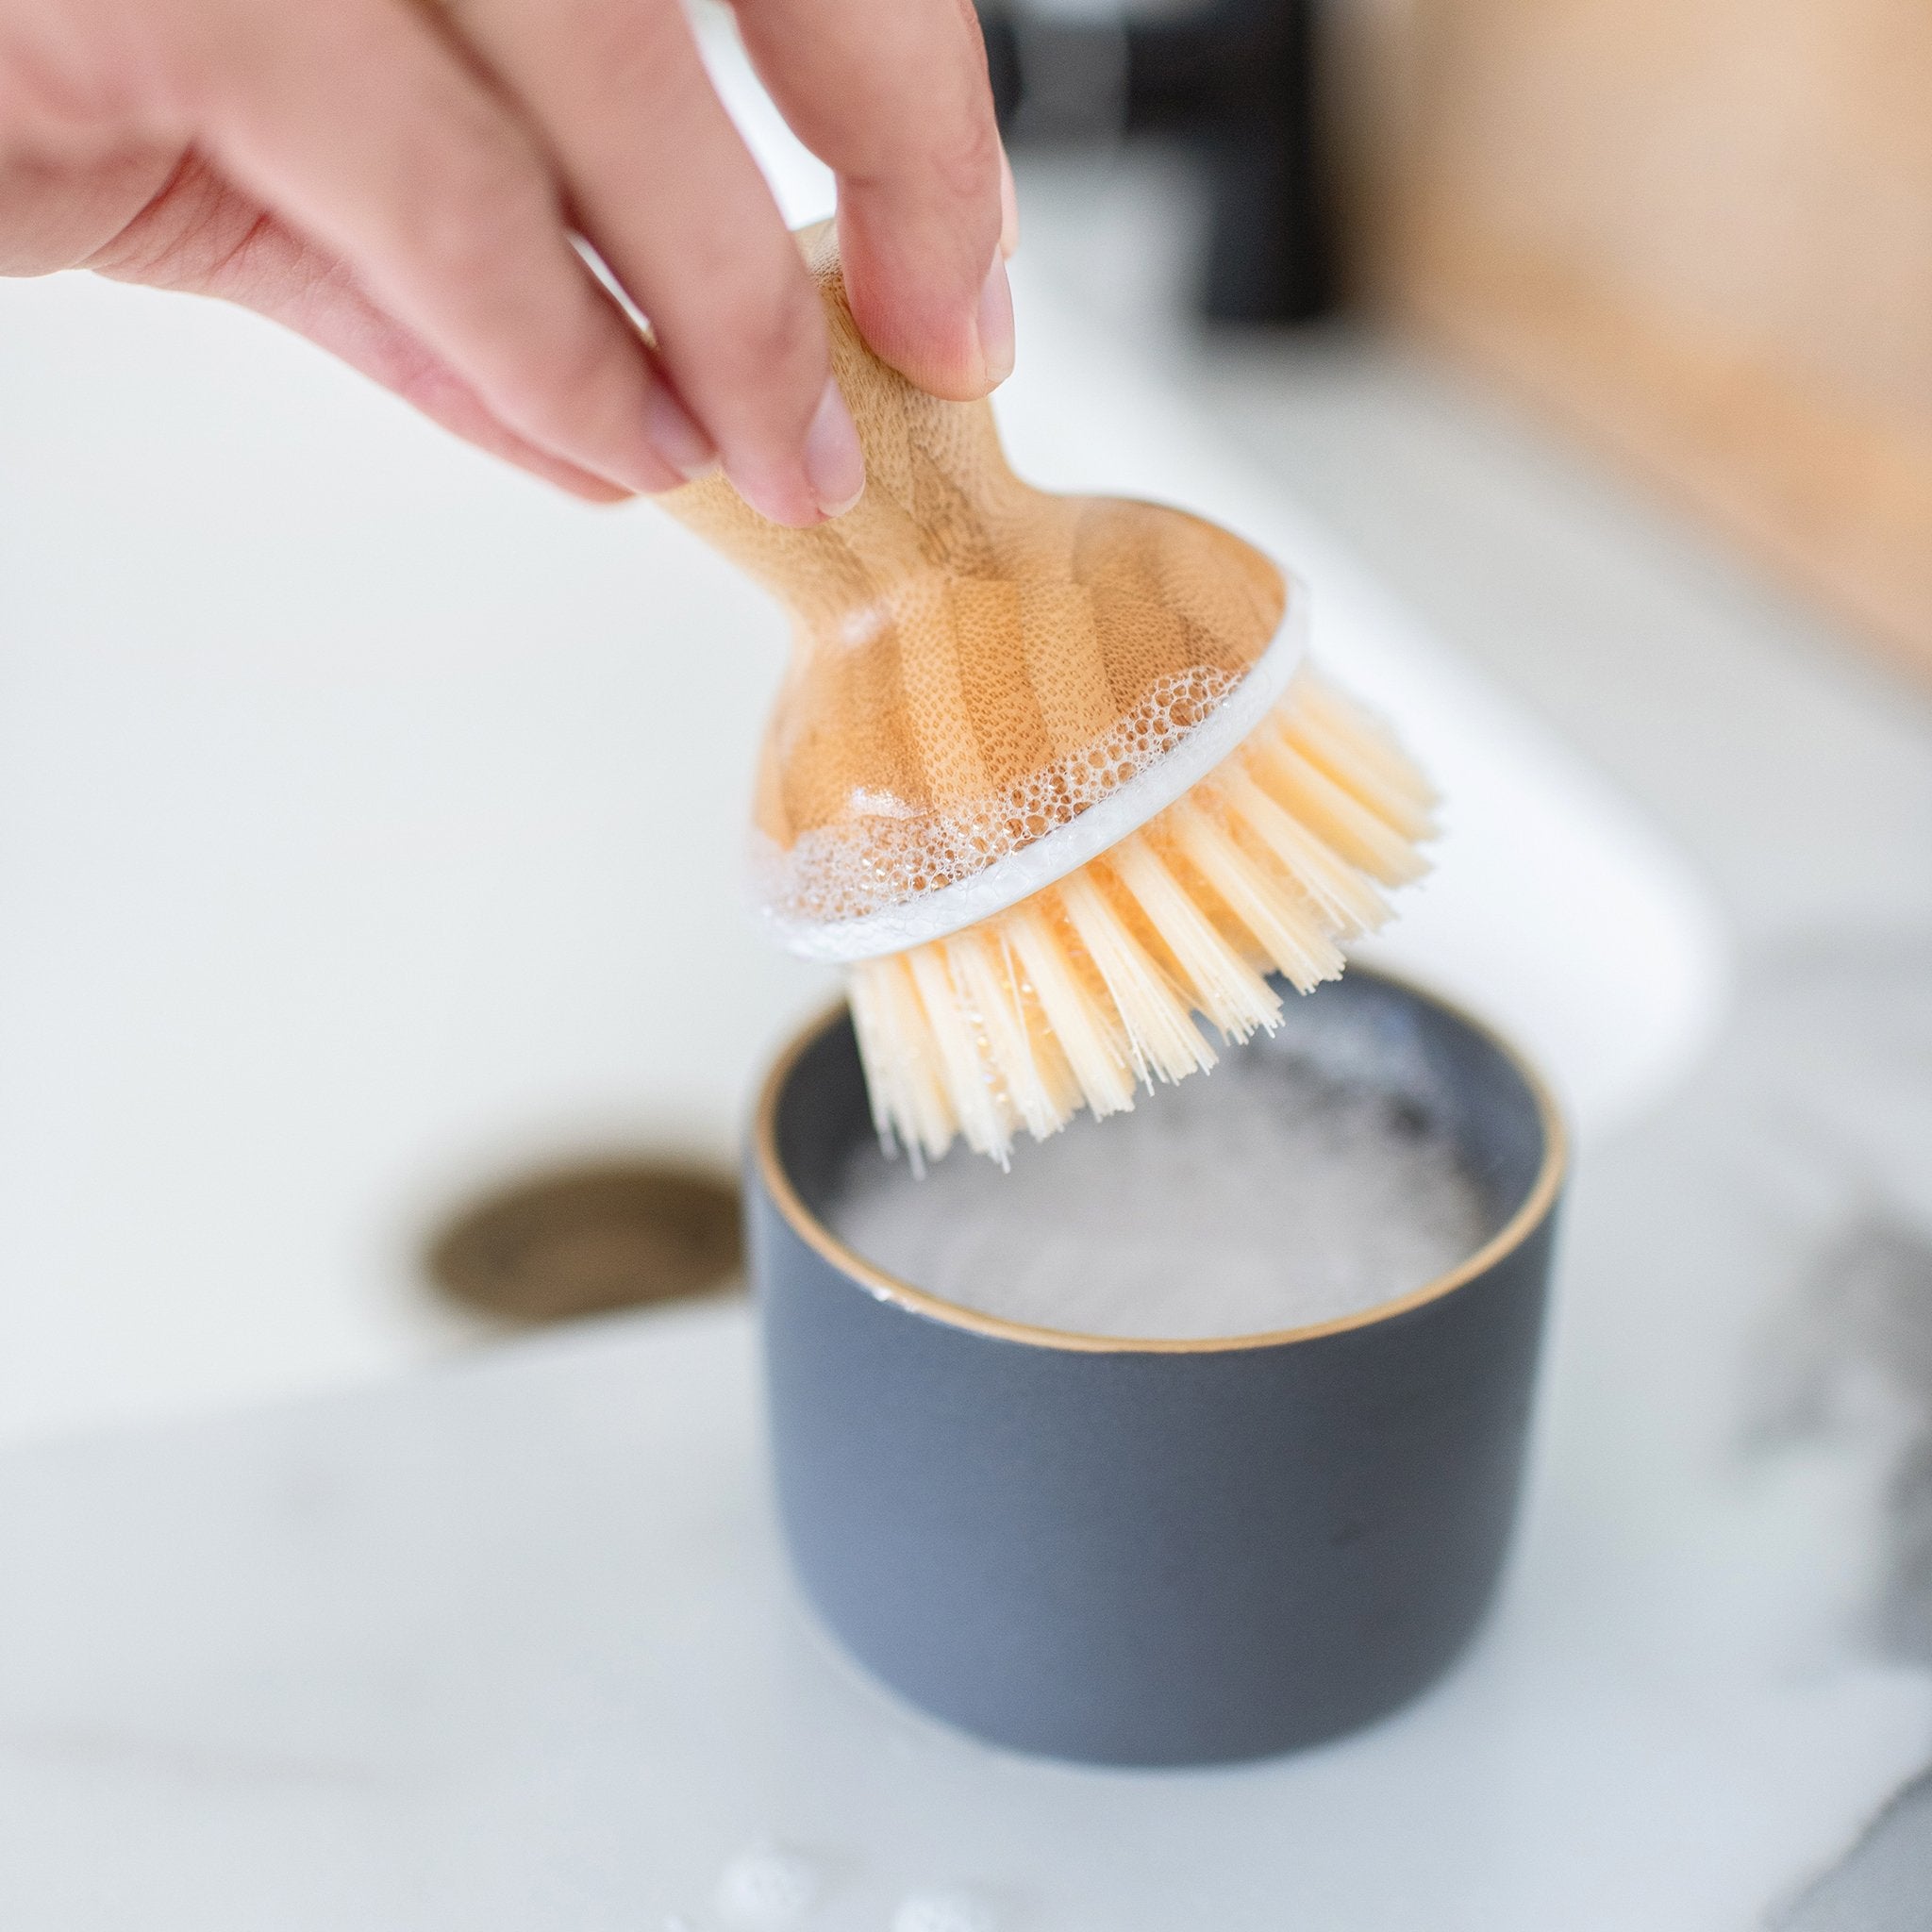 Dishwashing Brush Dish Scrub Brush Kitchen Dish Scrubber Bubble Up